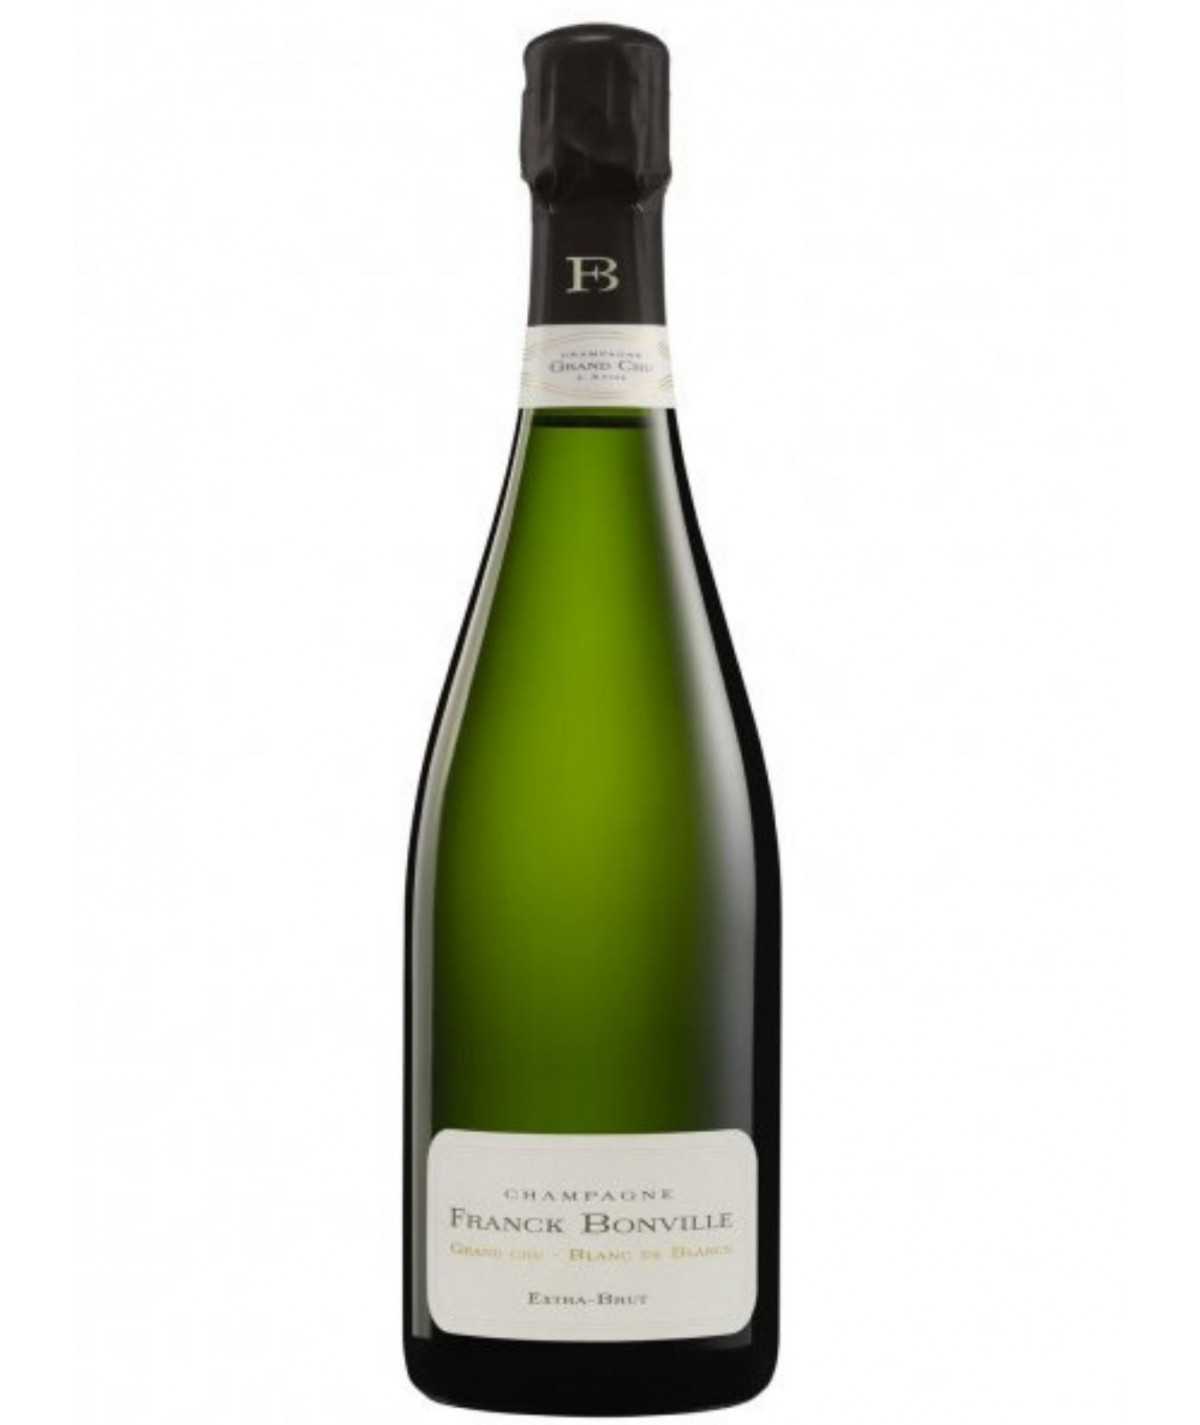 FRANCK BONVILLE Champagner Extra-Brut Grand Cru Blanc de Blancs